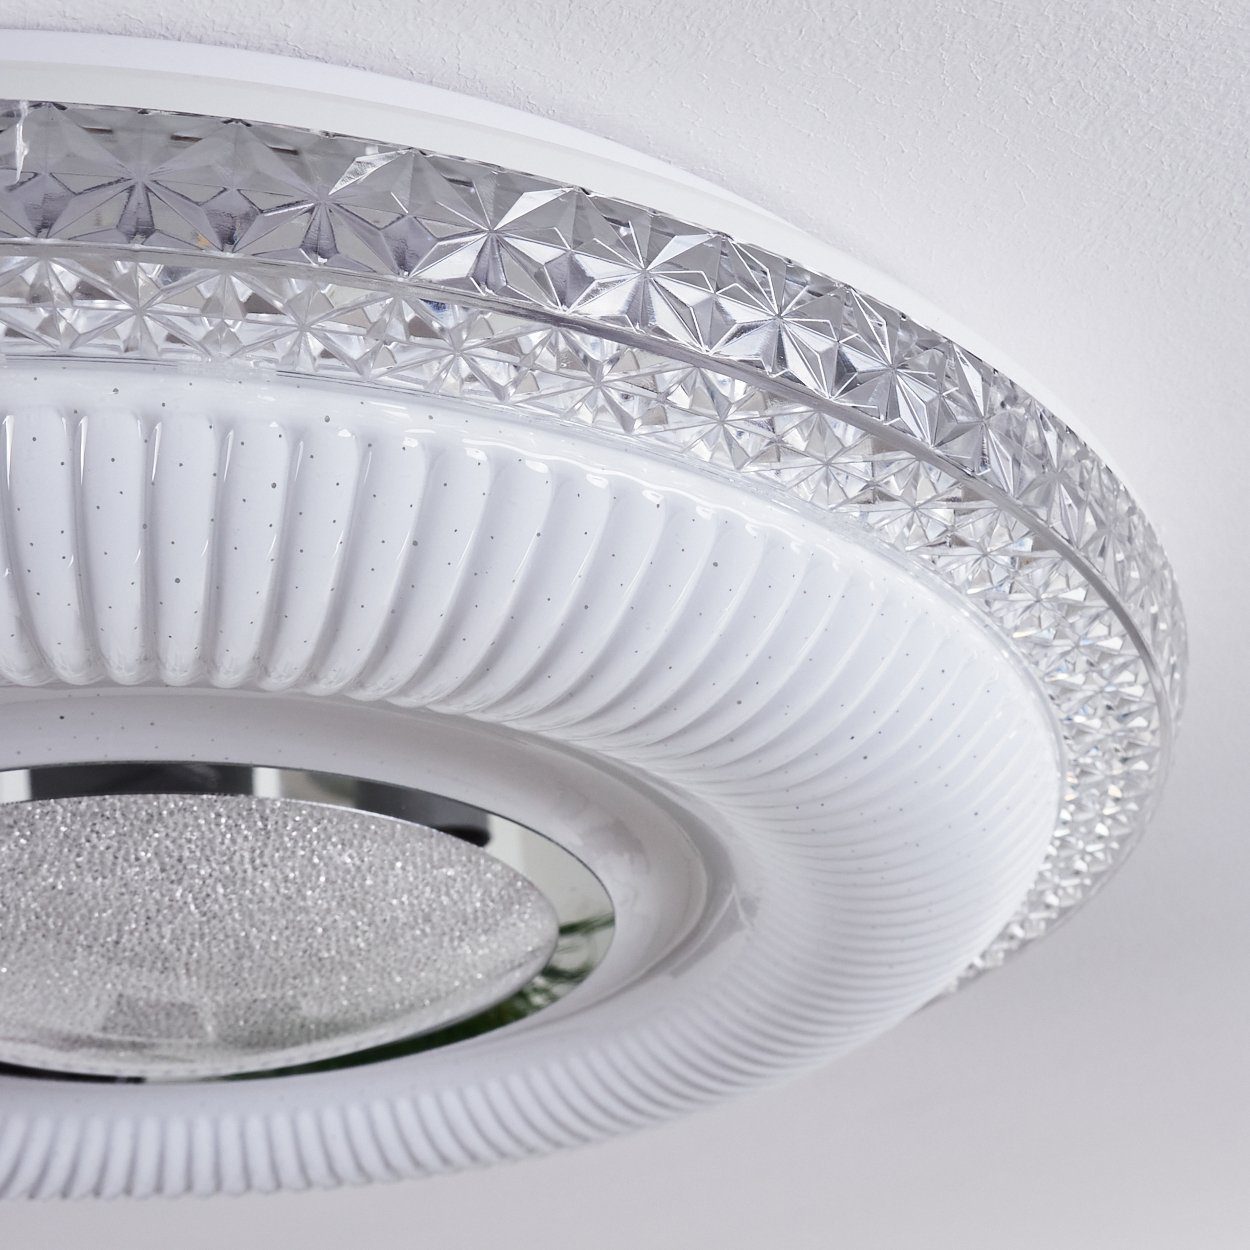 Leuchten Deckenleuchte Flur LED Glitzereffekt dimmbare weiß Schlaf hofstein Wohn Zimmer